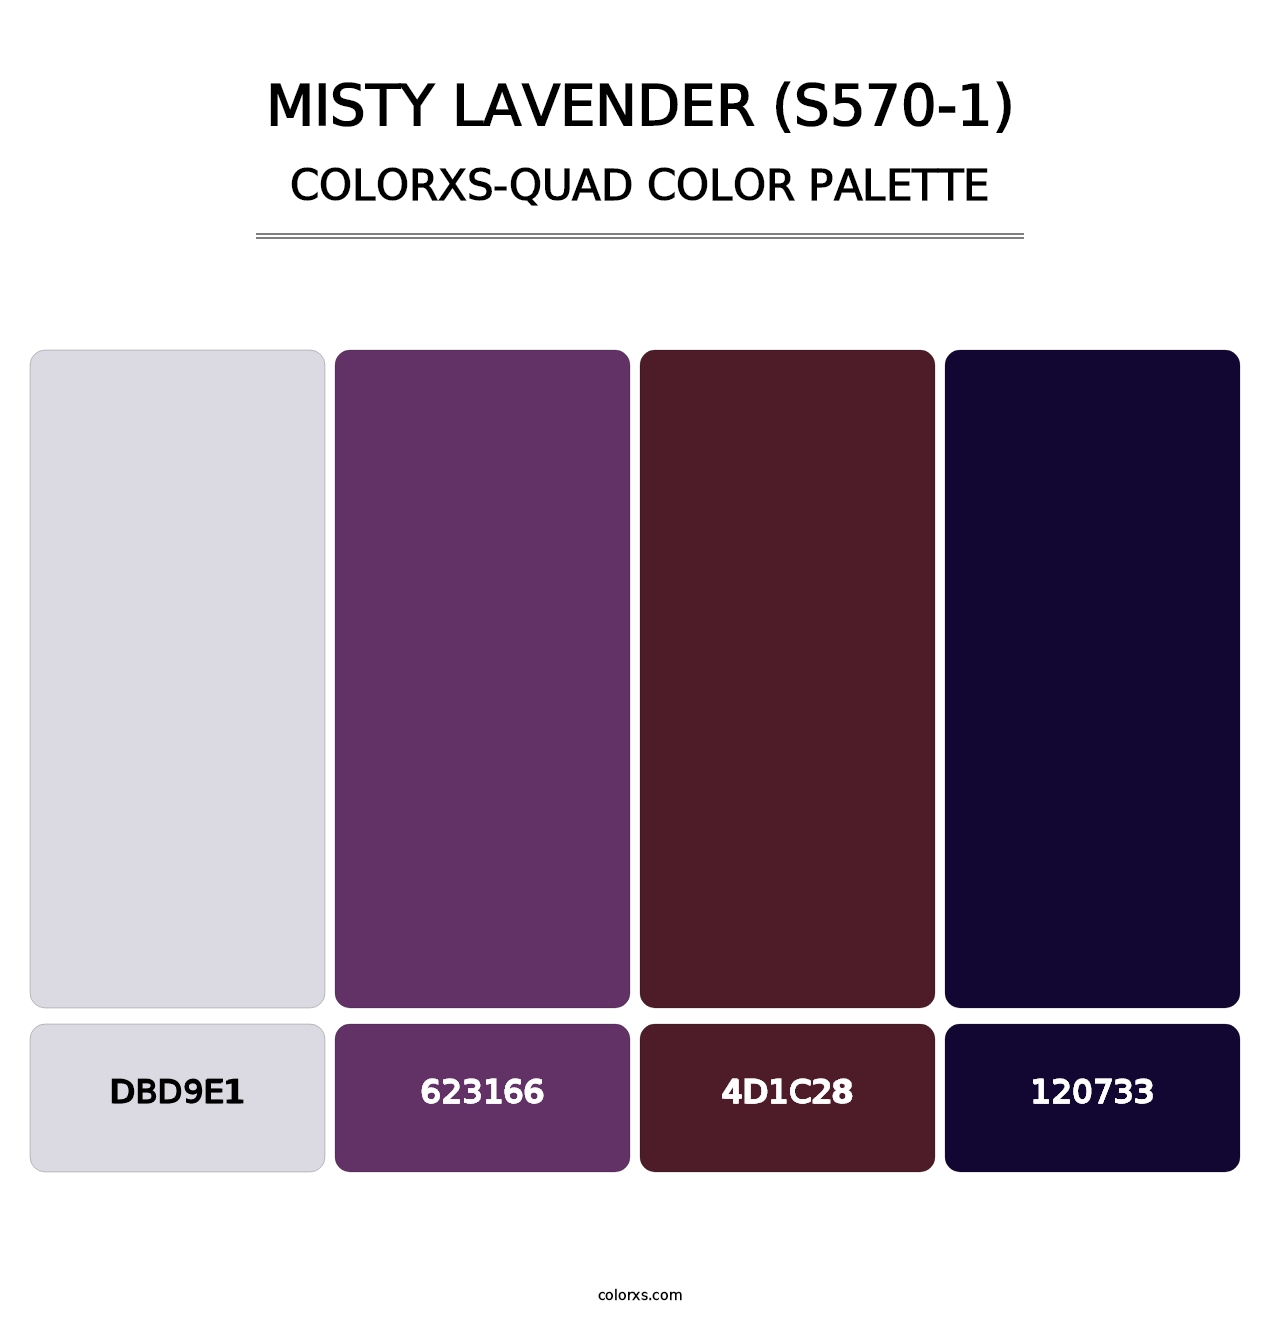 Misty Lavender (S570-1) - Colorxs Quad Palette